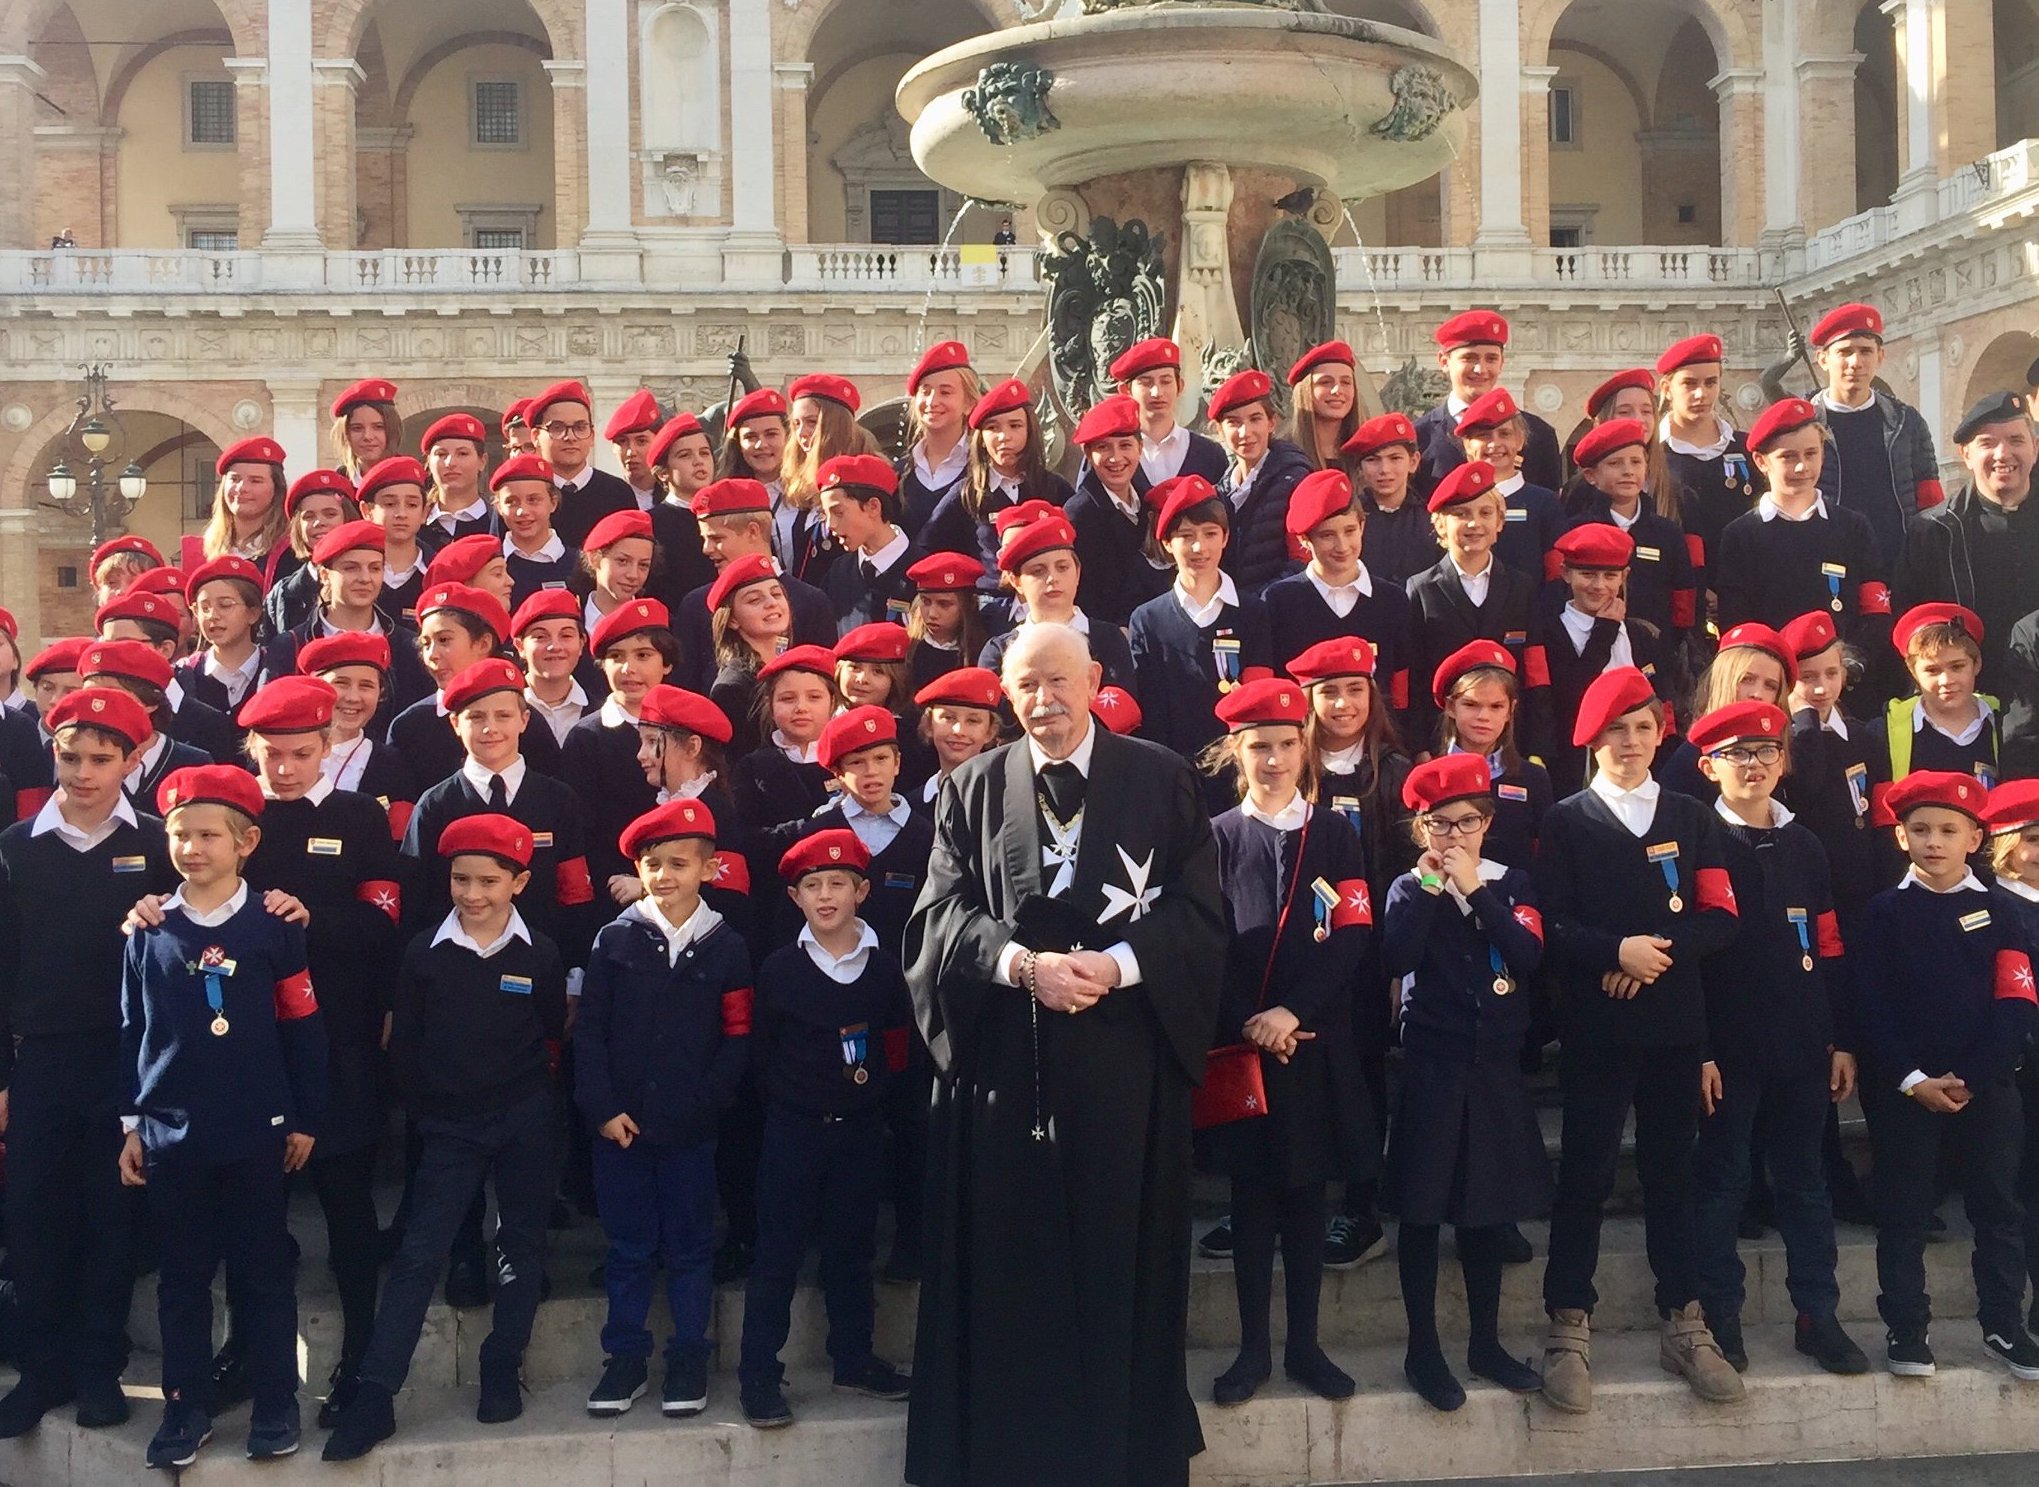 Wallfahrt des Malteserordens zum Heiligtum von Loreto: mehr als 1.700 Teilnehmer aus ganz Italien.